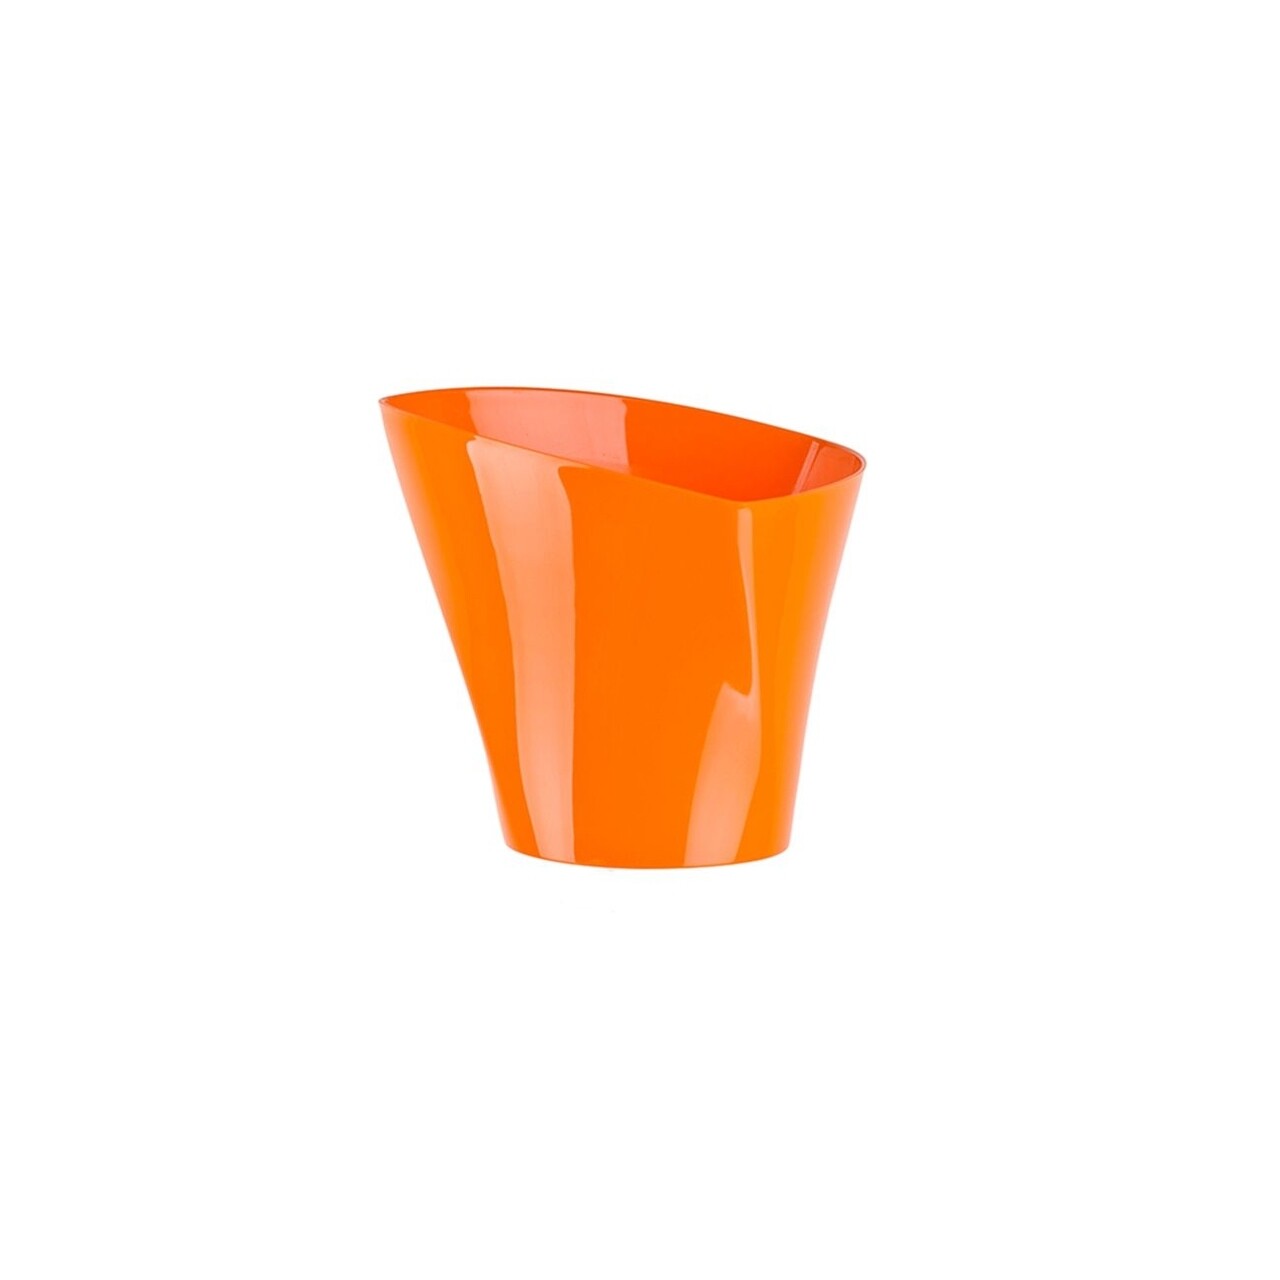 Virágcserép Twister 22 cm, műanyag, narancs